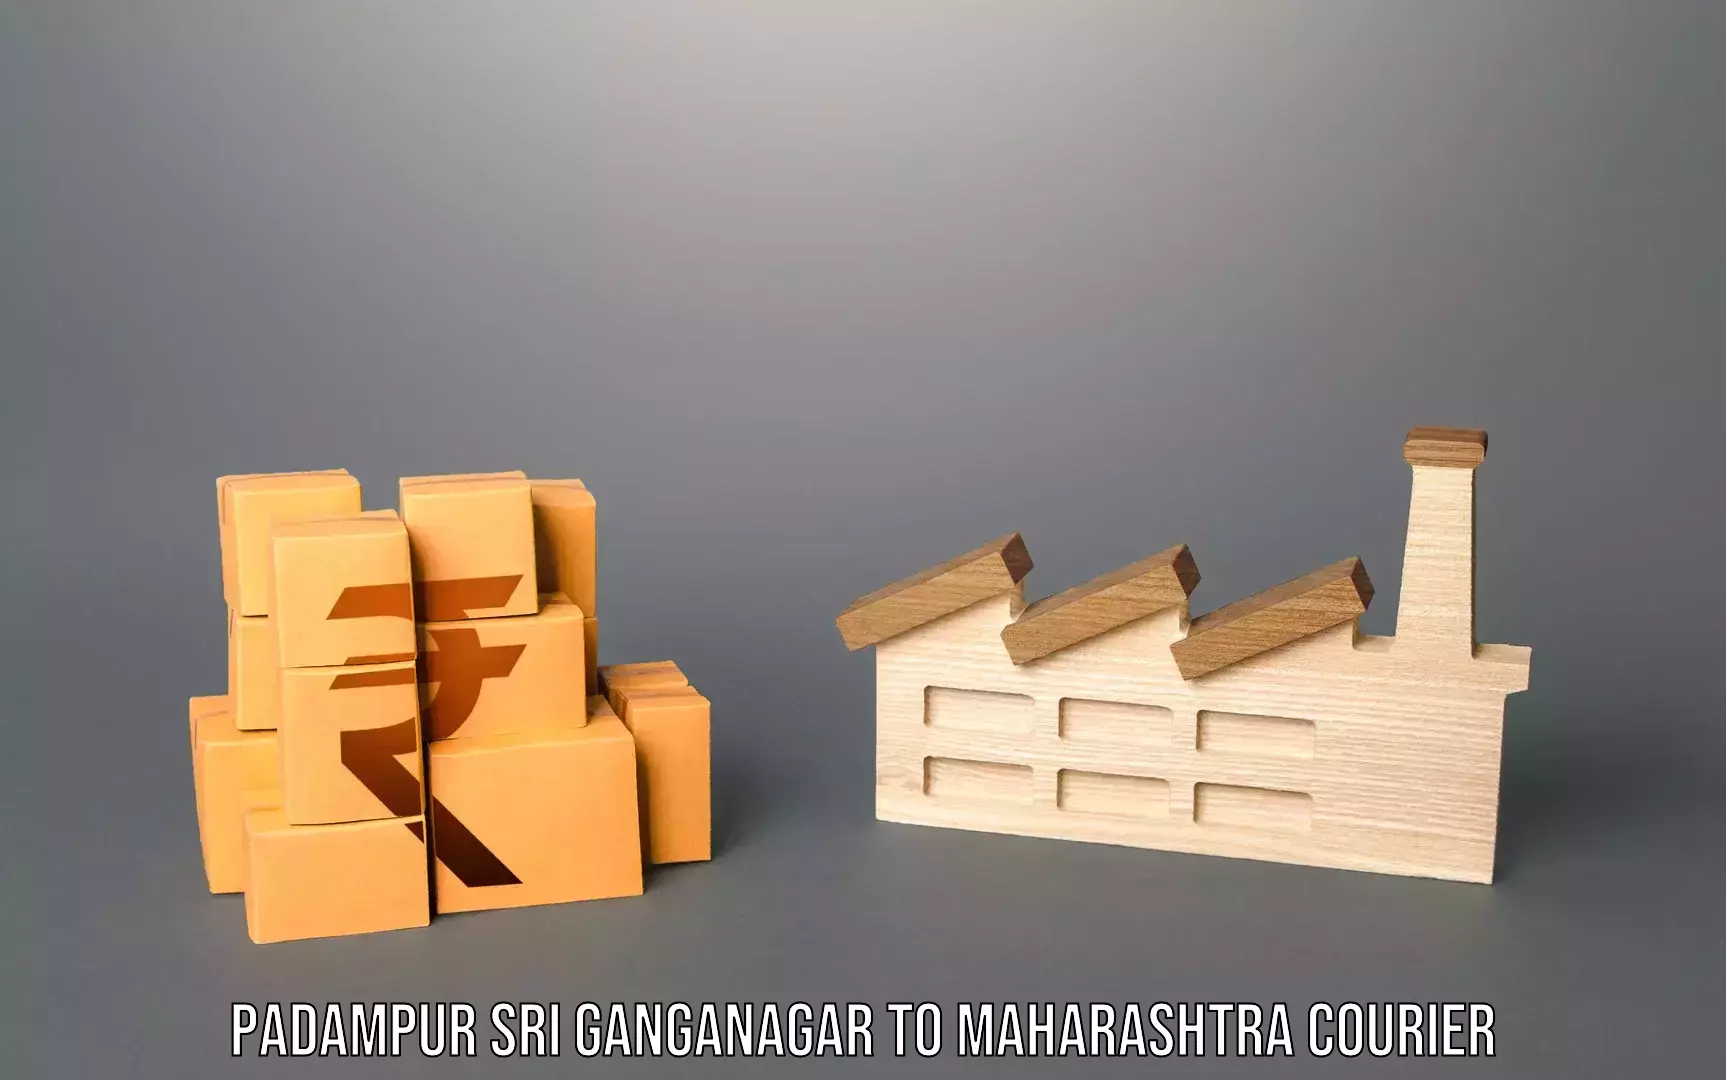 Corporate baggage transport in Padampur Sri Ganganagar to Mangrulpir